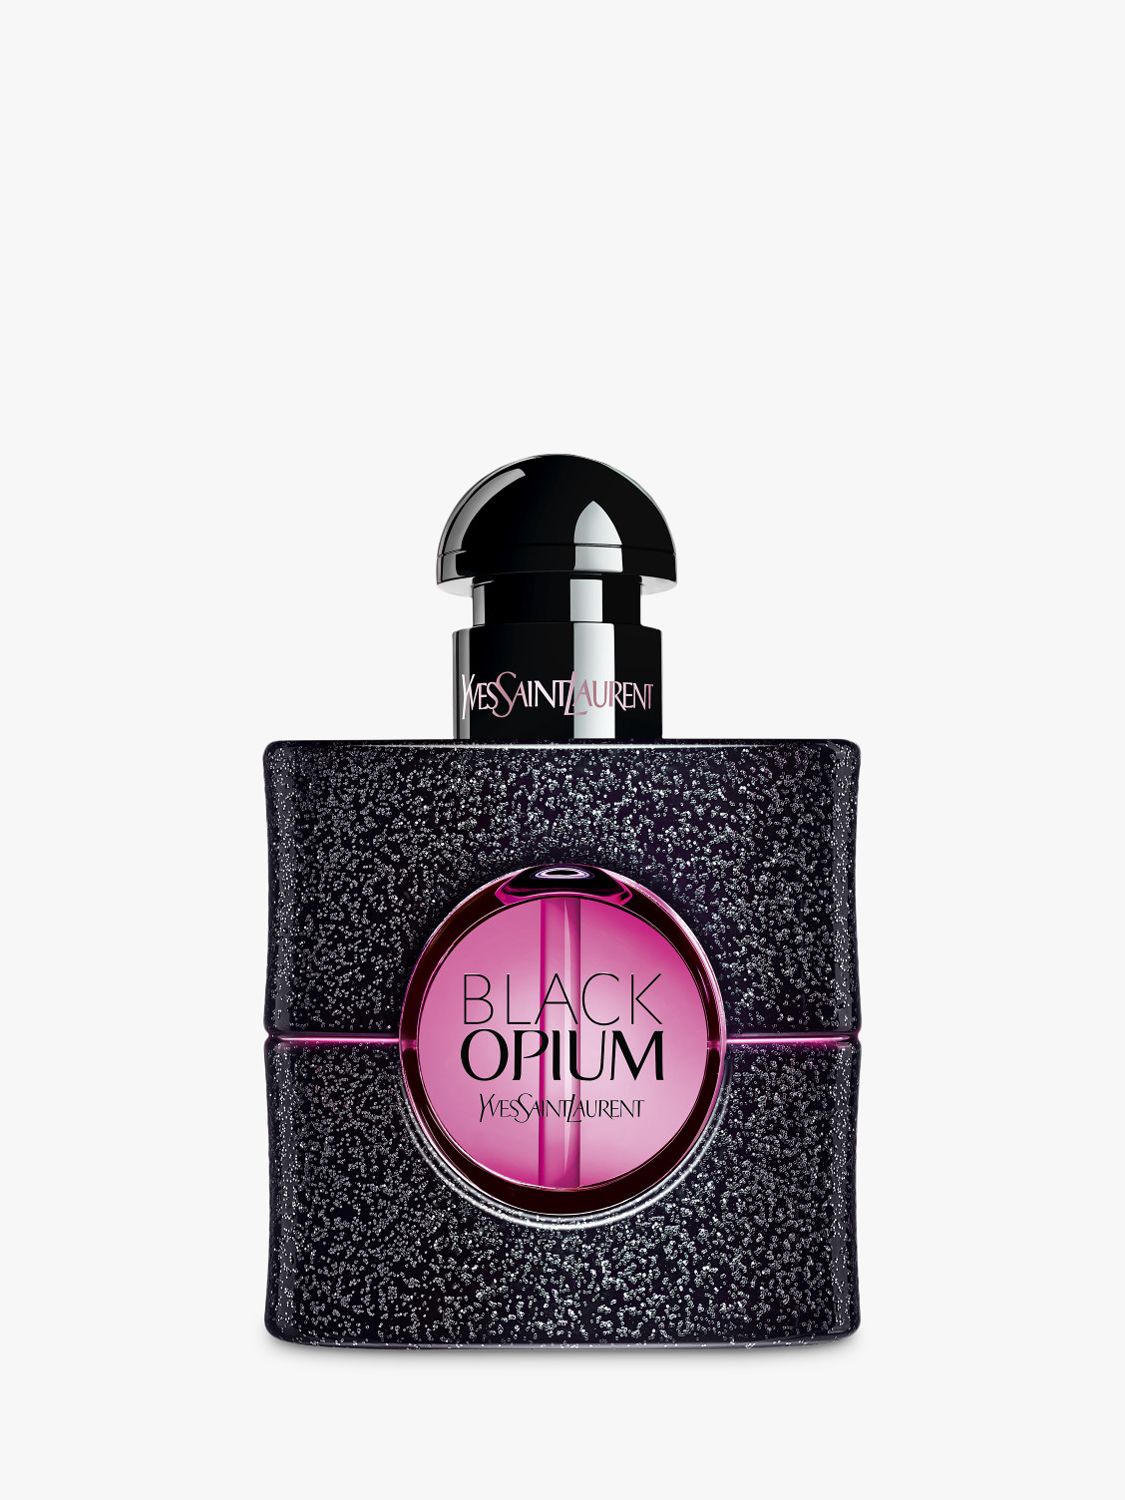 Yves Saint Laurent Black Opium Neon Eau de Parfum, 30ml at John Lewis ...